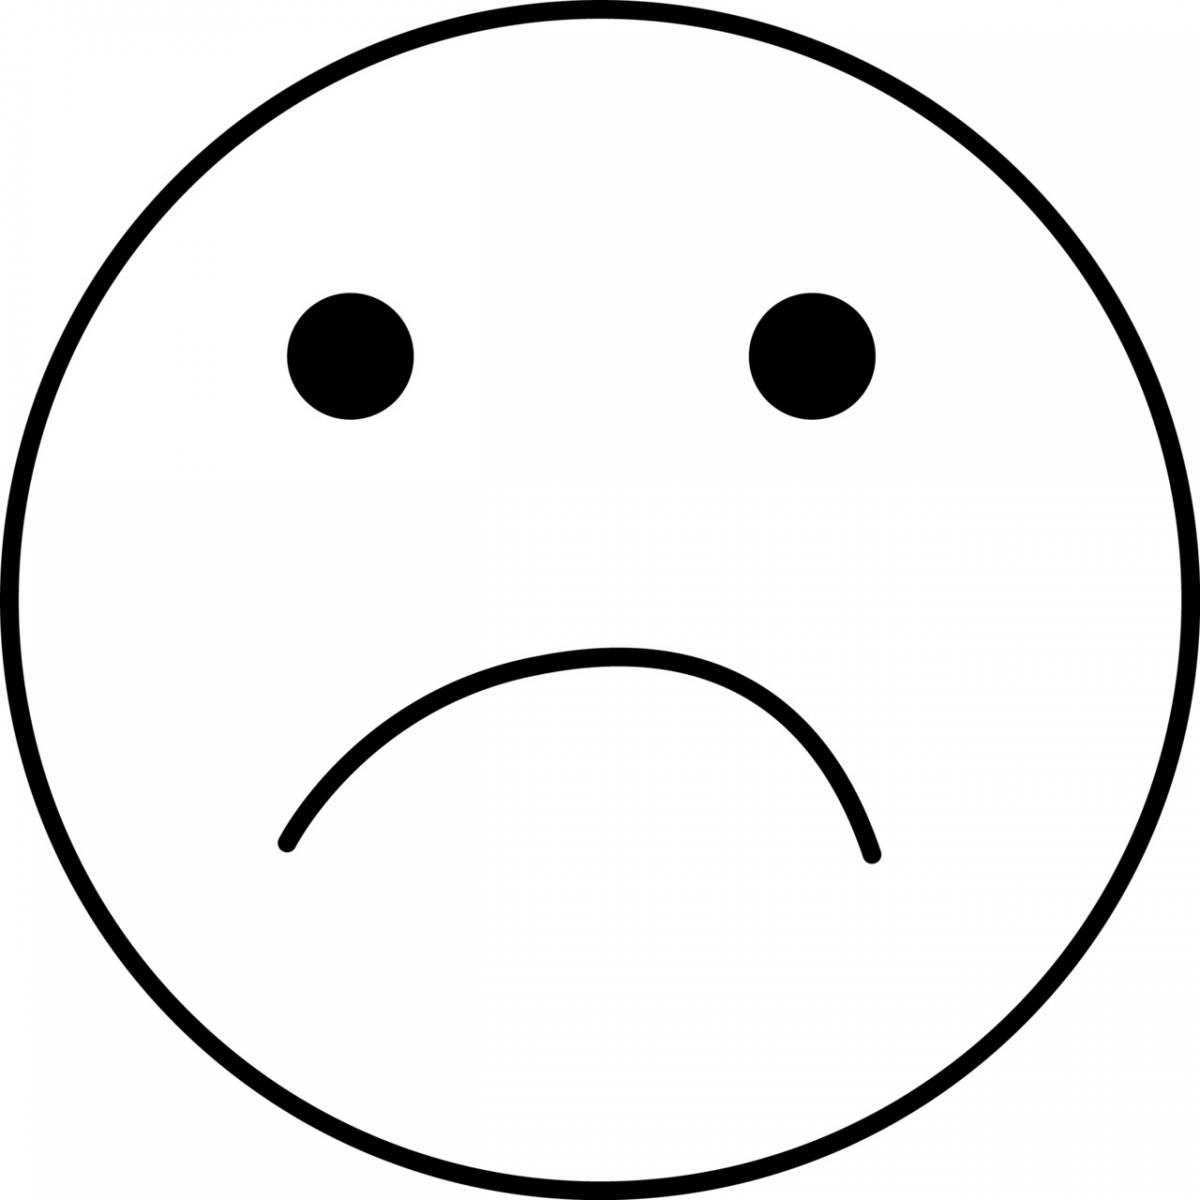 Free Printable Sad Emoji Faces - Ecosia - Free Printable Sad Faces